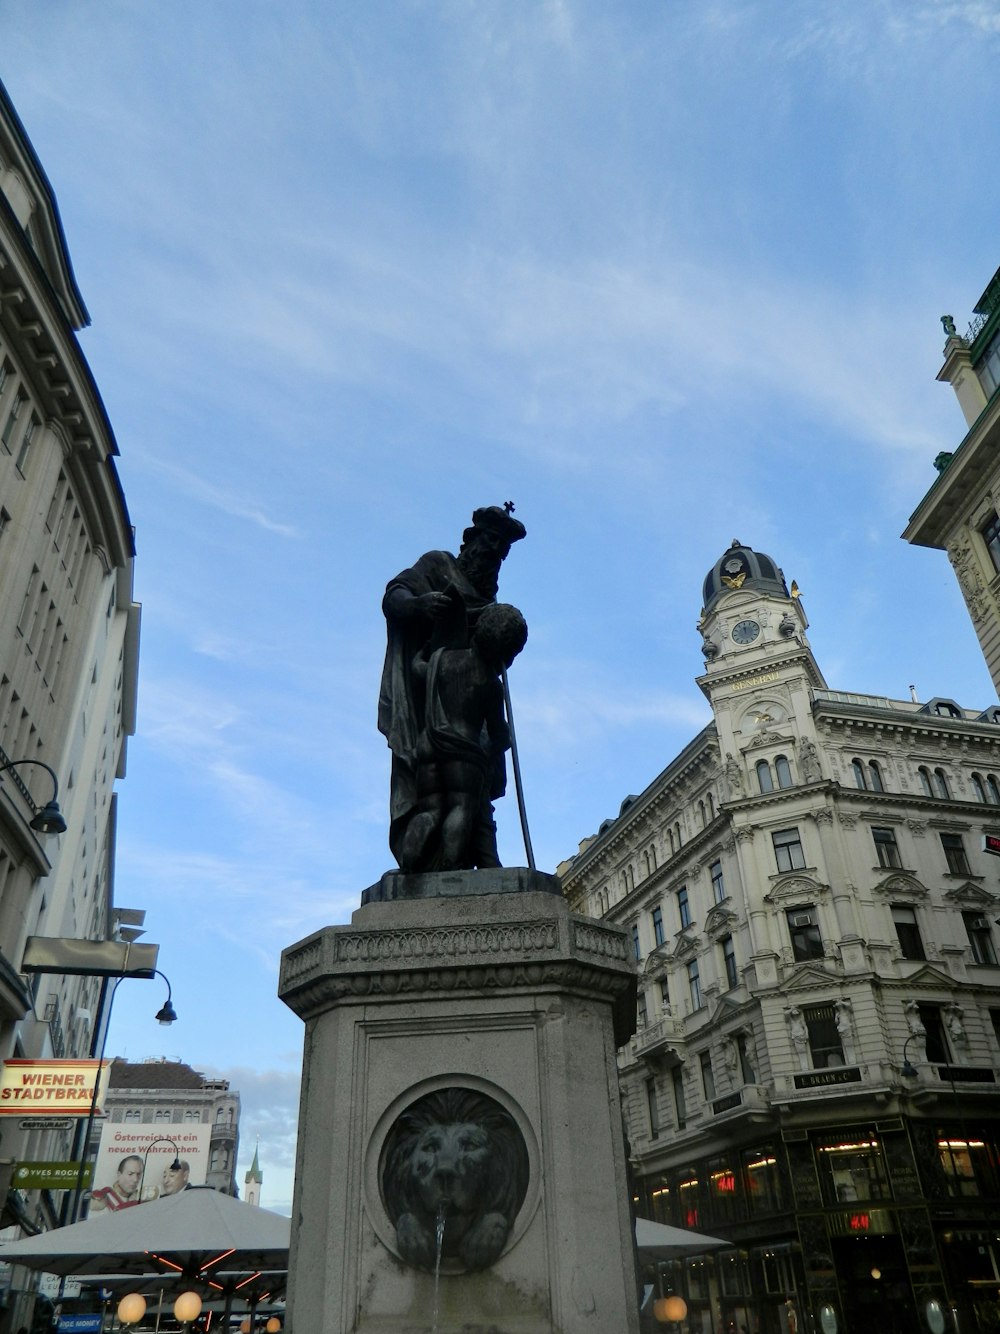 una statua di una persona su un cavallo in una città